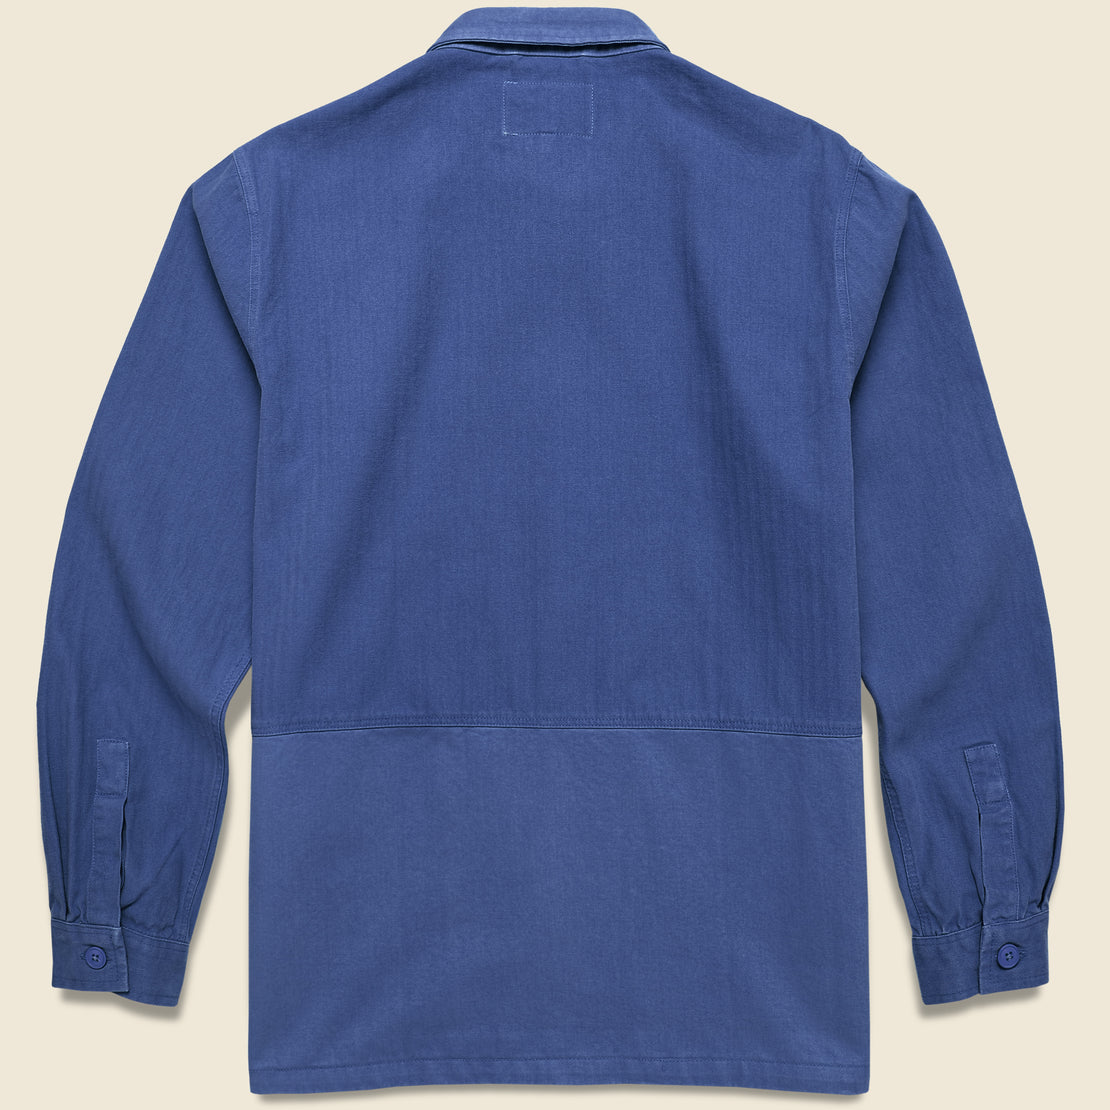 Rosyth Overshirt - Royal Blue